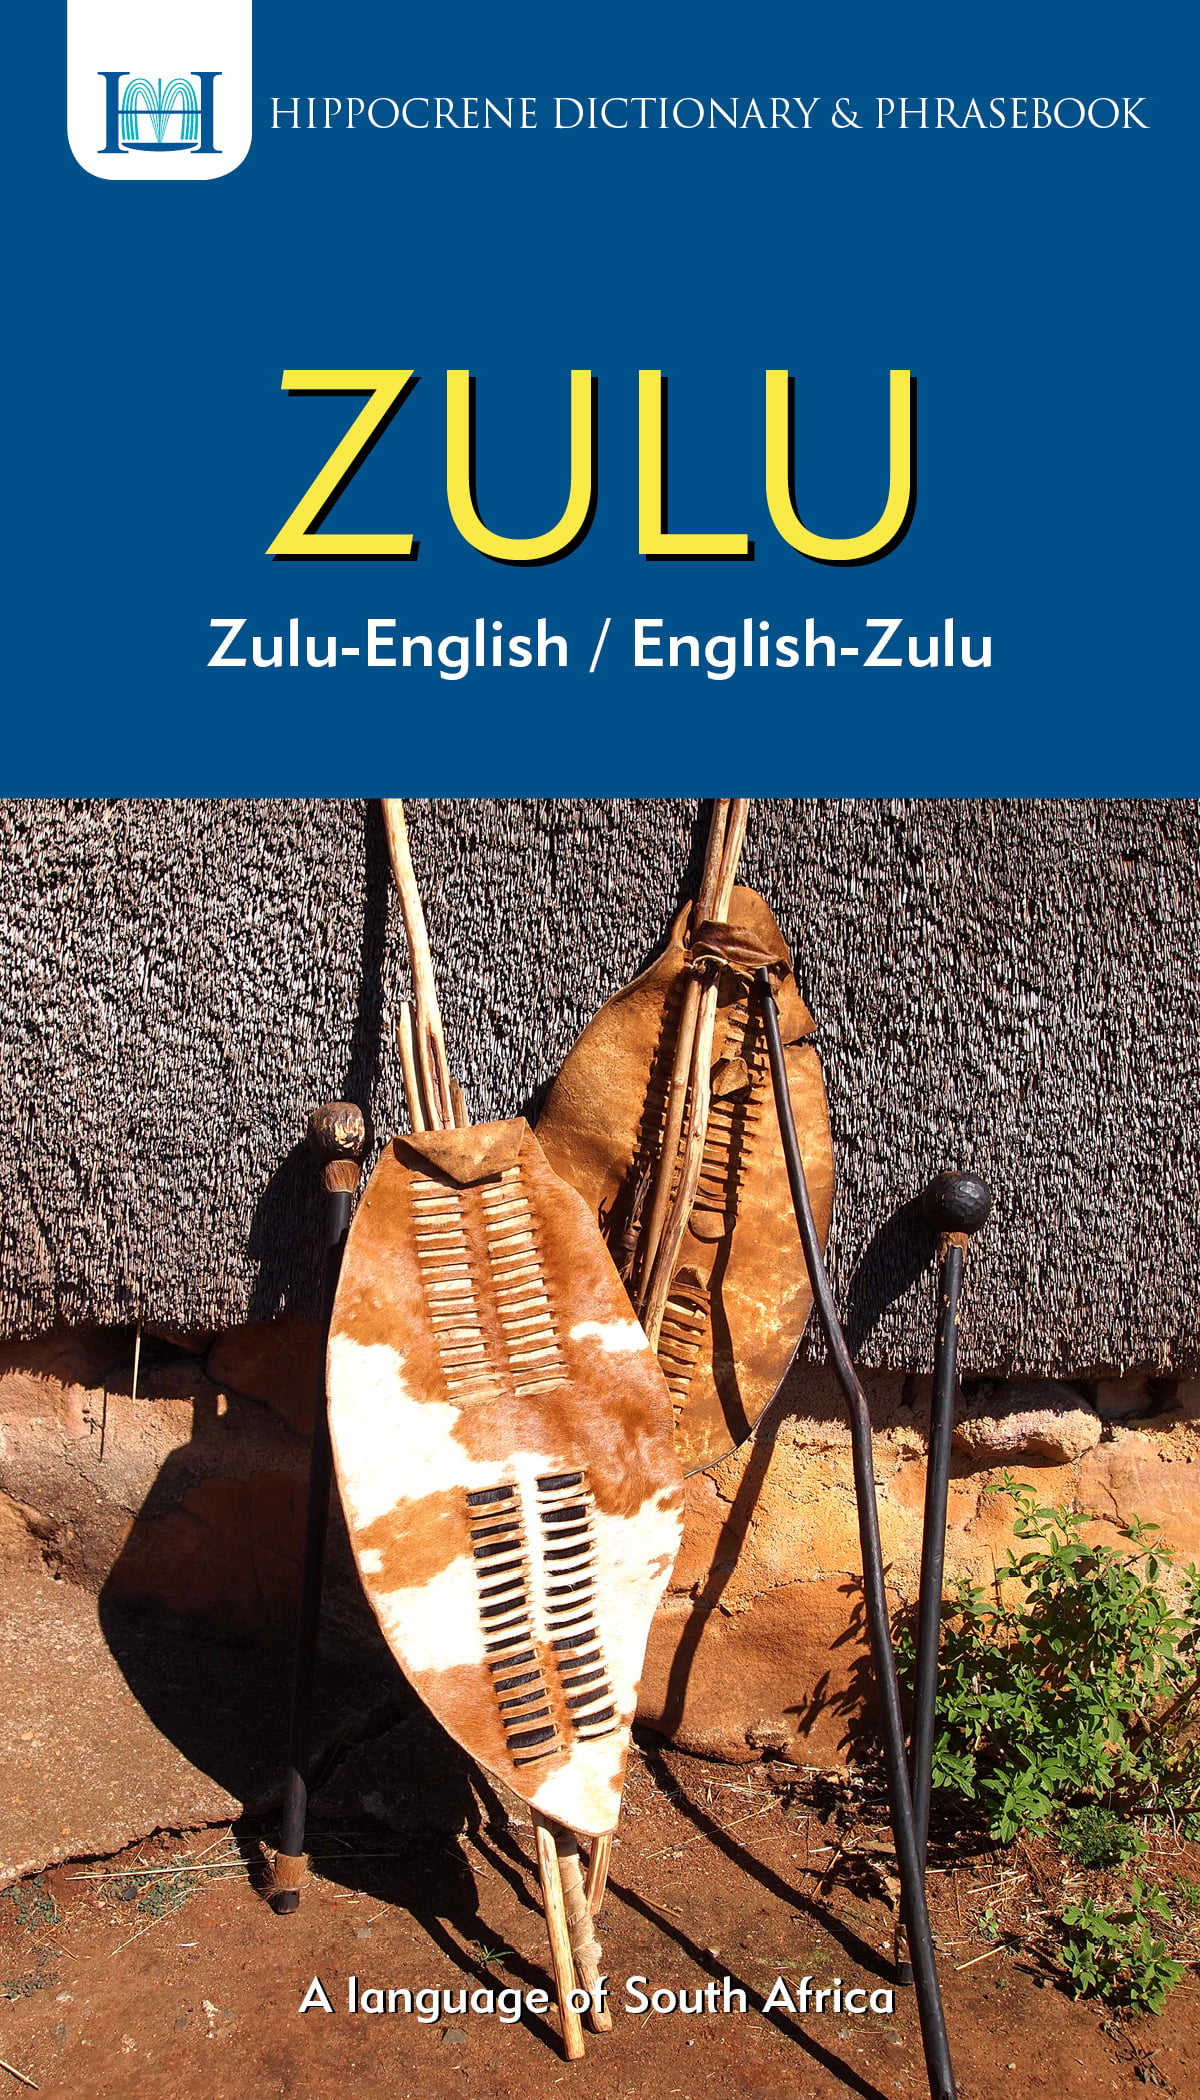 ukucwasa essay in zulu